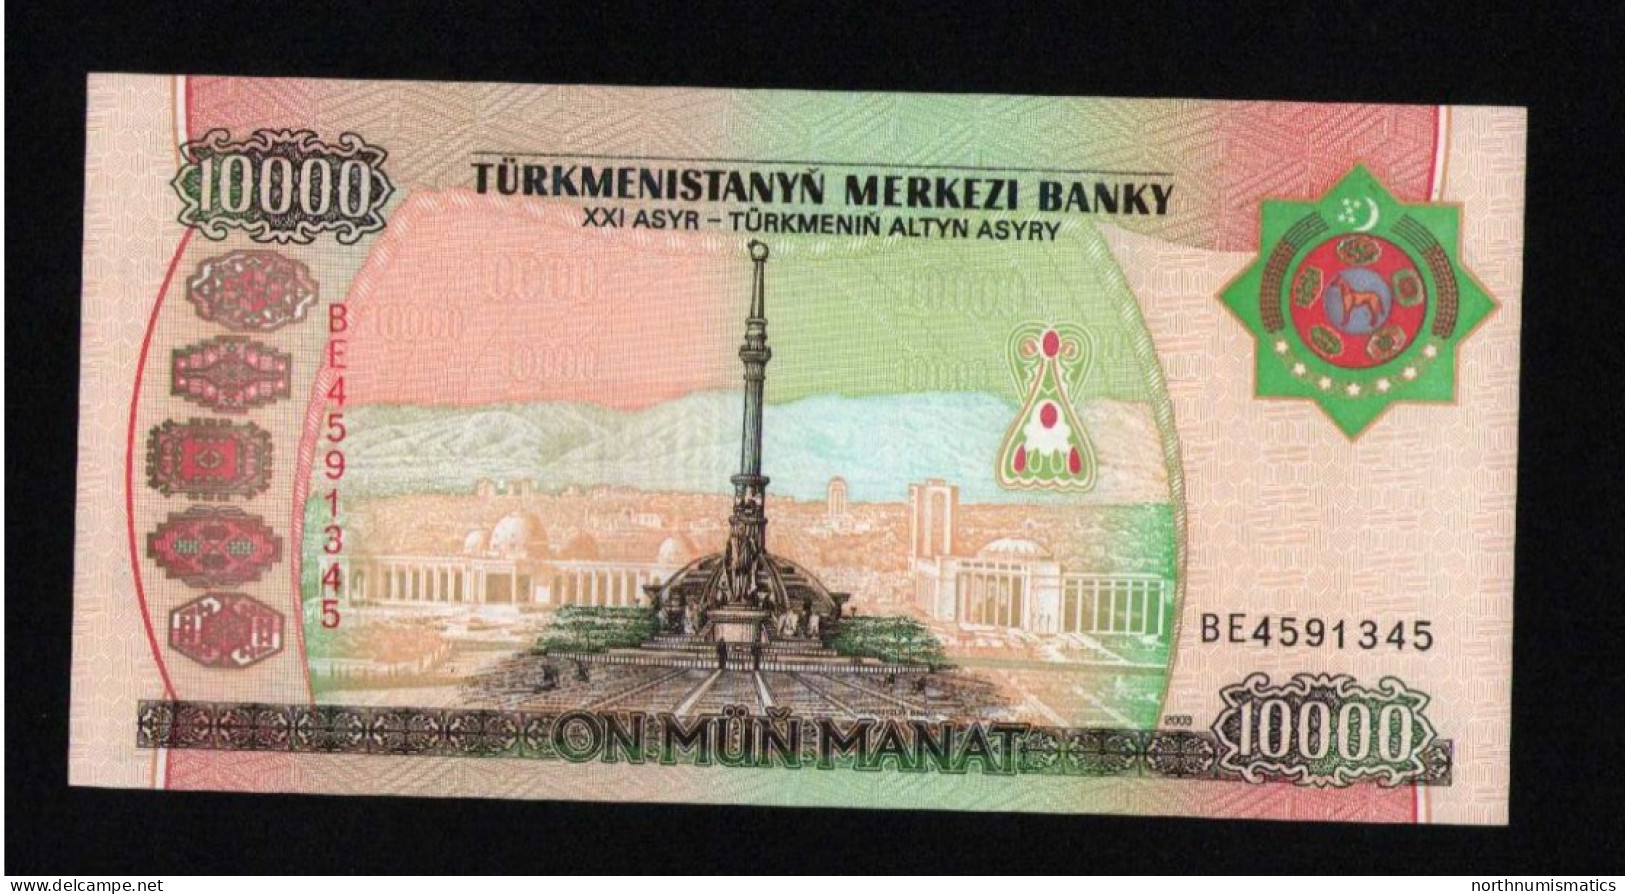 Turkmenistan 10000 Manat 2003 Unc - Turkmenistan